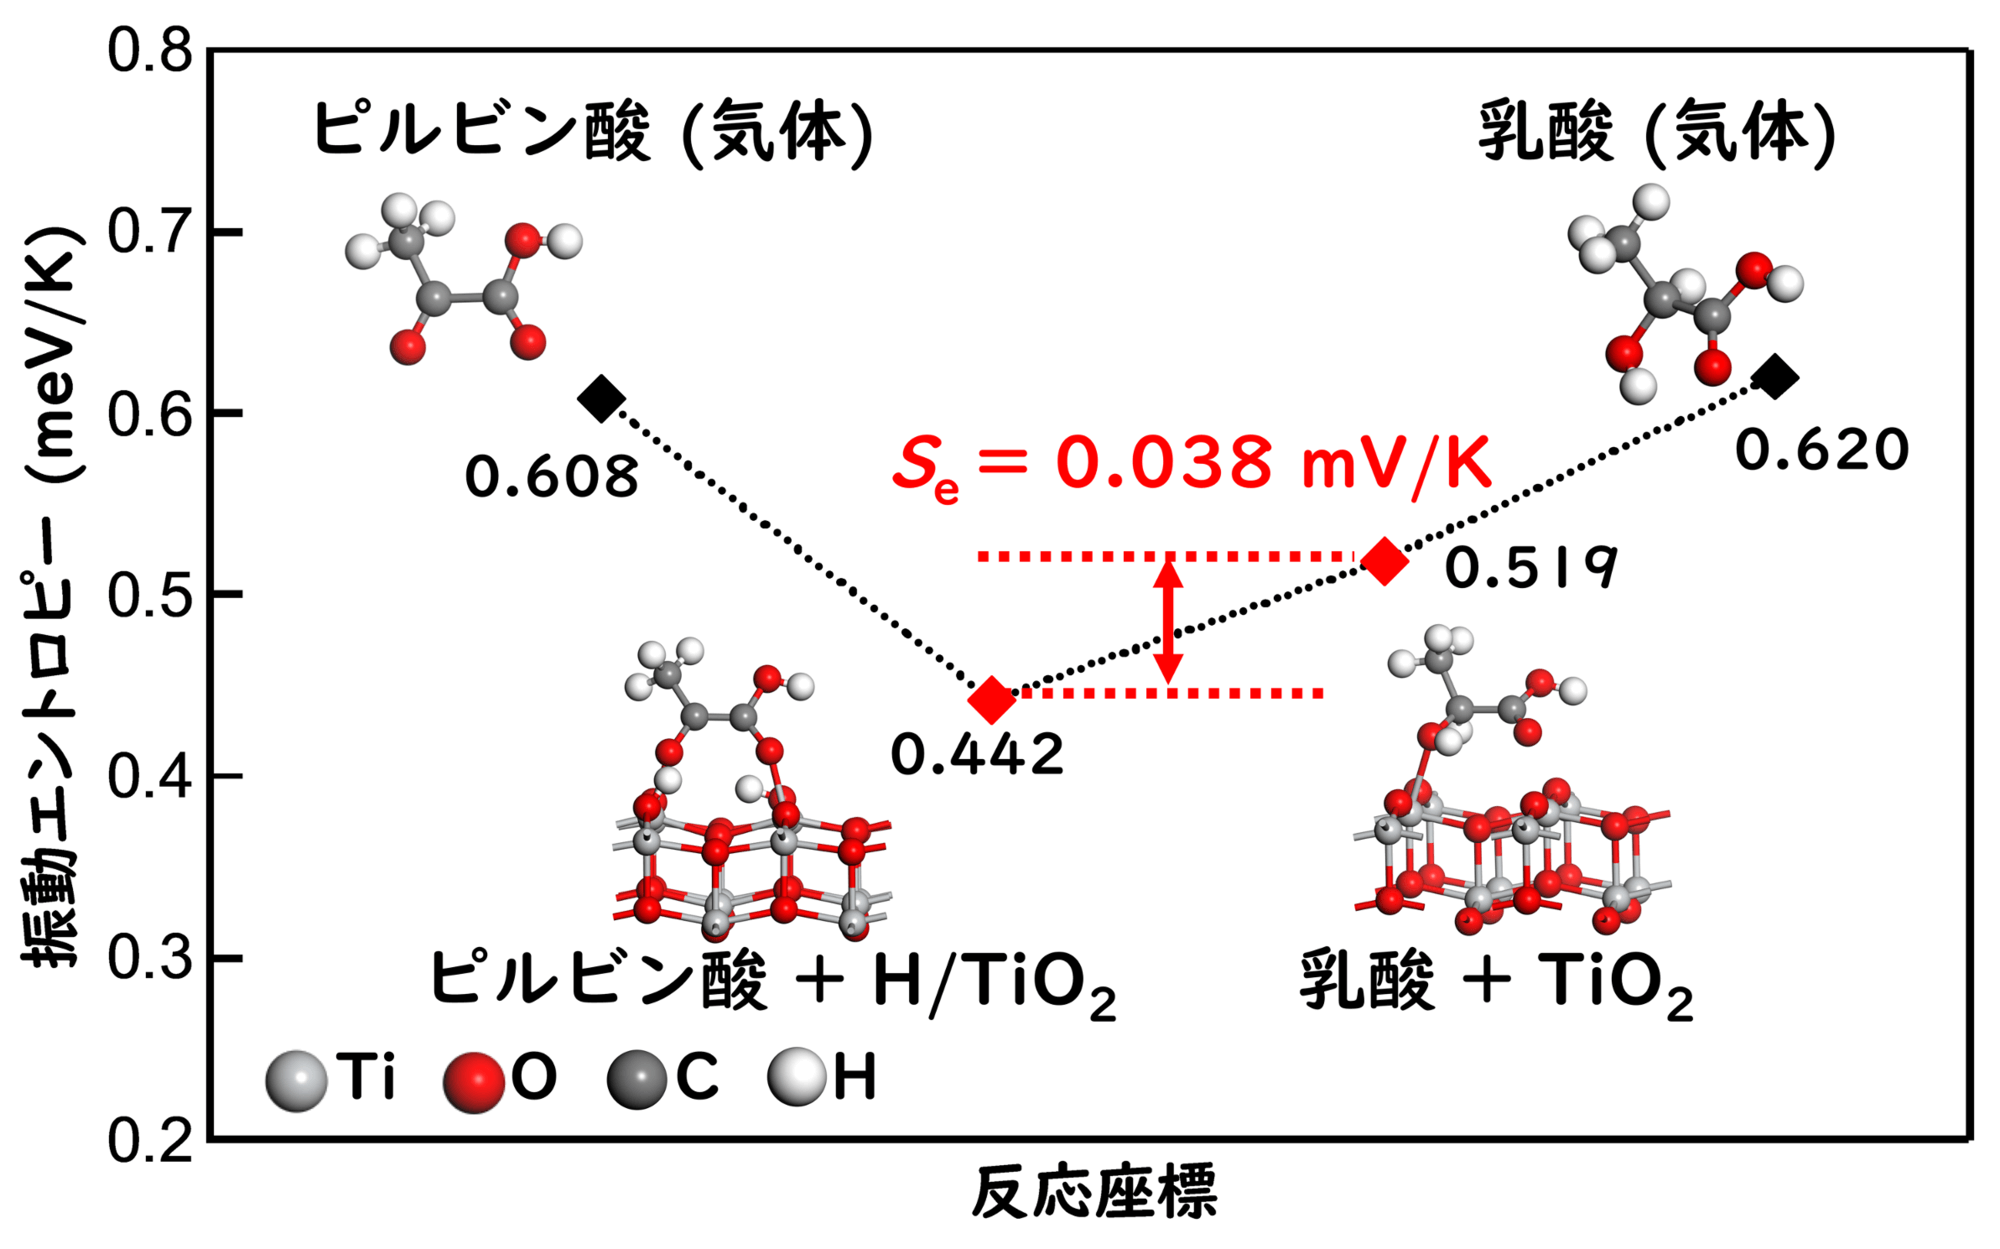 <dfn class="fig">図5</dfn>：<span class="qrinews-figure-title">計算化学によって求められた各状態の振動エントロピー</span>　酸化チタン (TiO<sub>2</sub>) 上にピルビン酸と水素が存在している状態と乳酸が存在している状態で大きなエントロピー差が生じており、このエントロピー差から計算したゼーベック係数の符号が実験値と一致することがわかった。図は江口さんより提供。